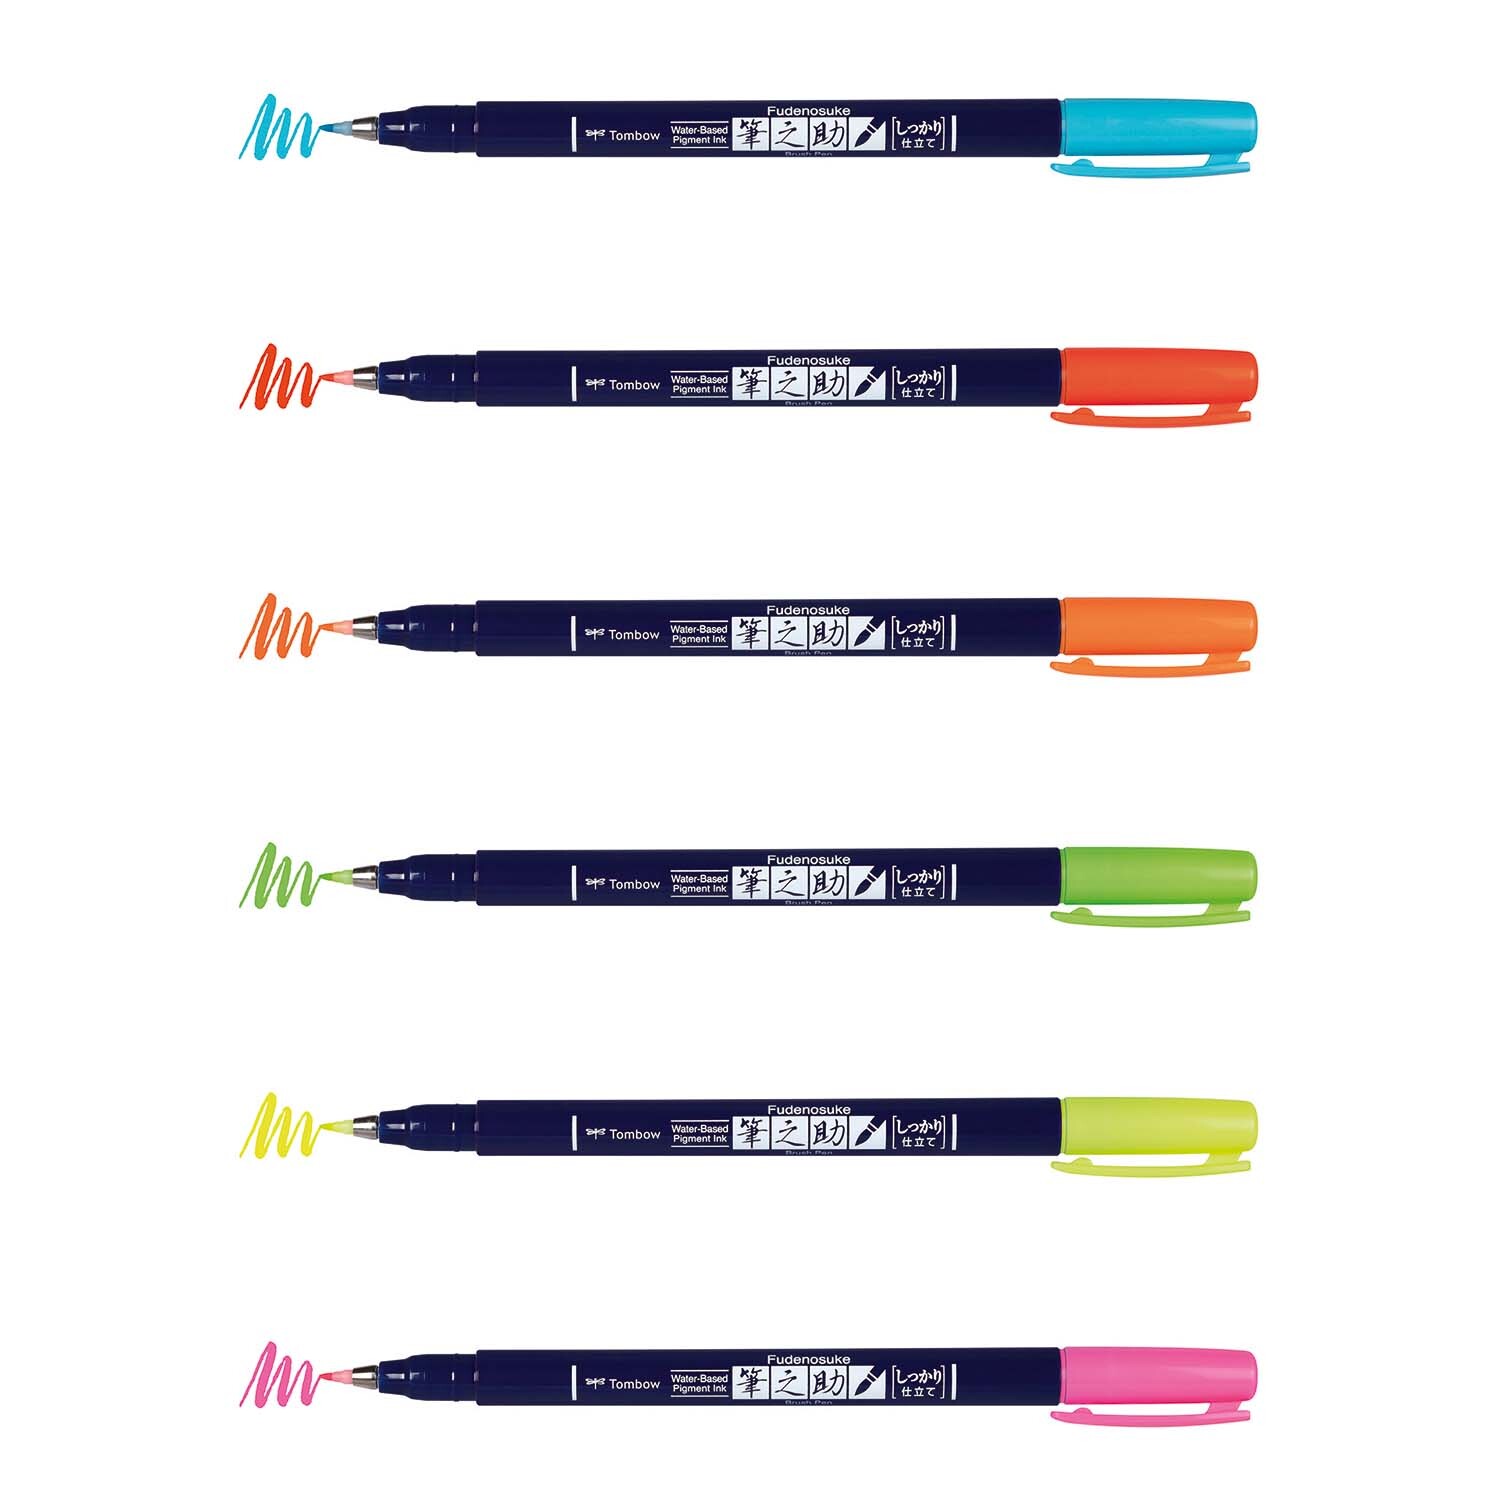 Fudenosuke Brush Pens neon 6teilig